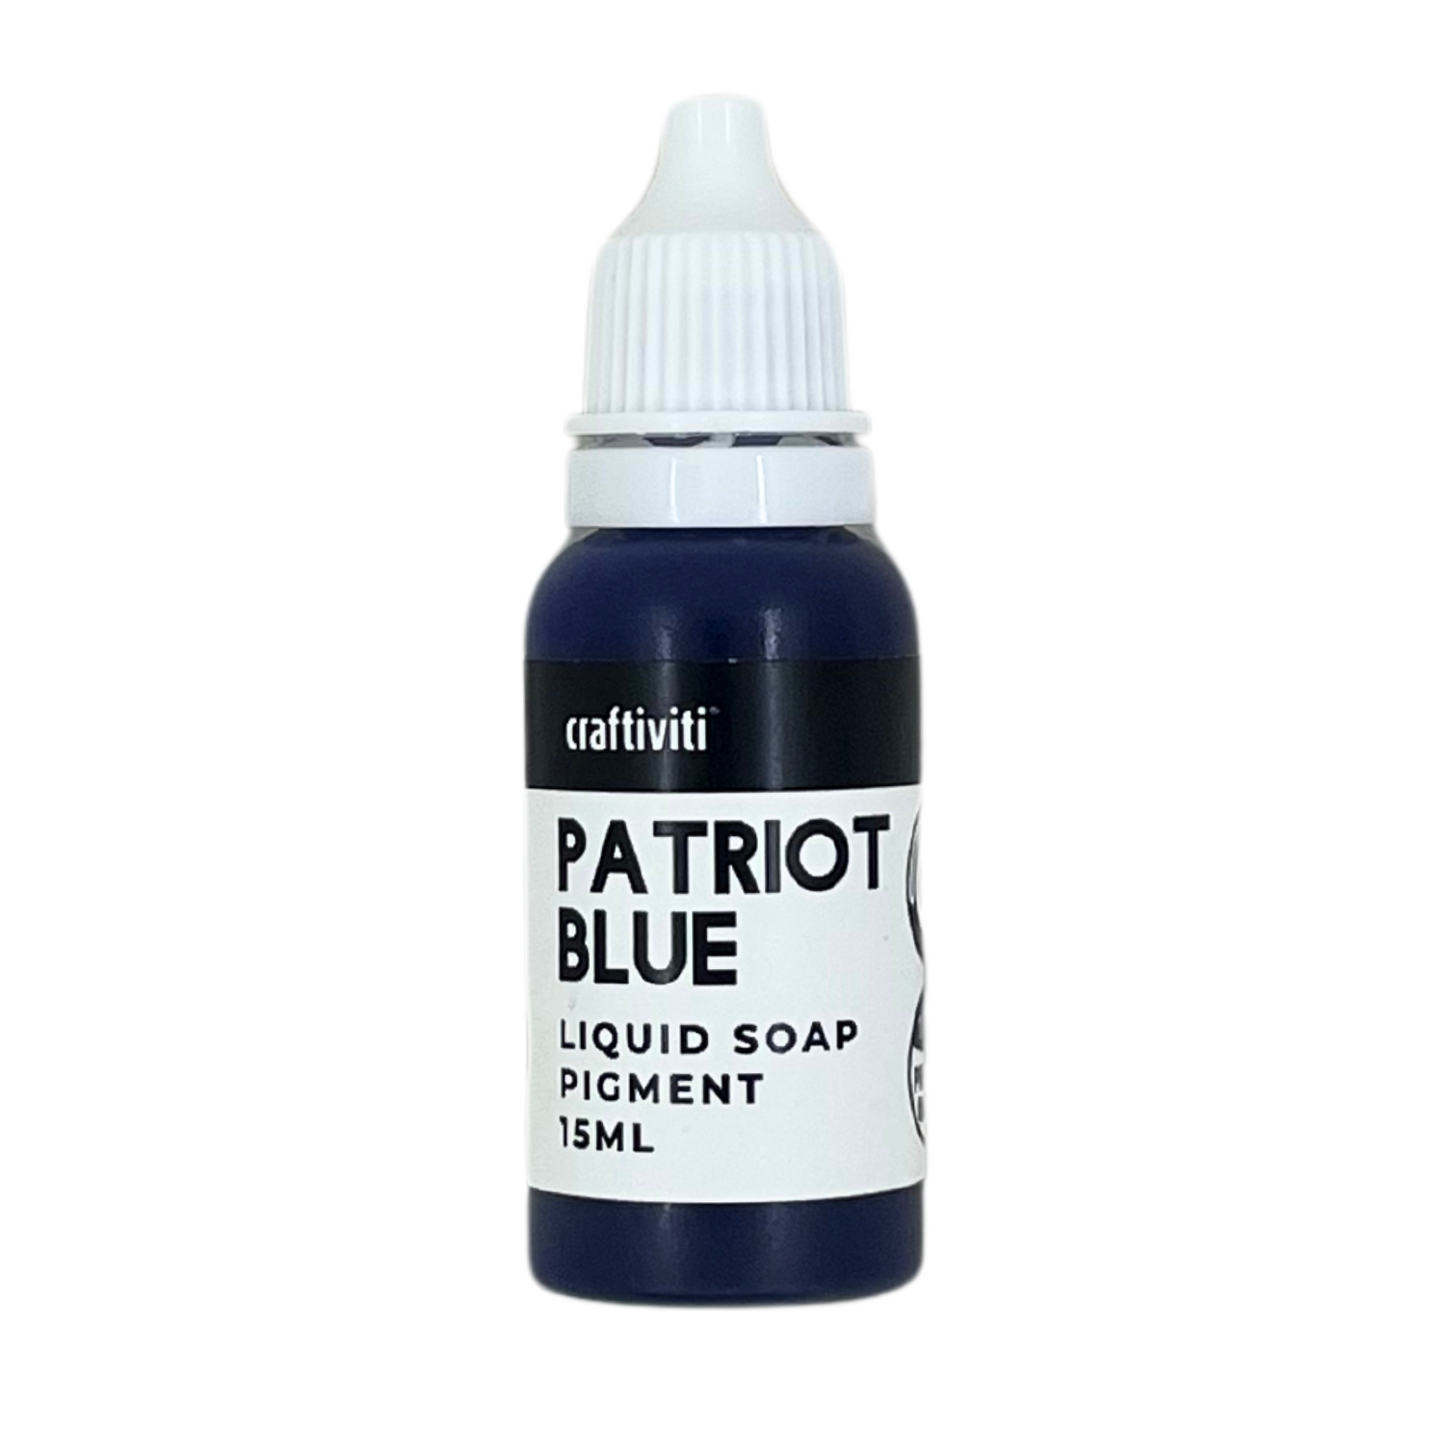 Liquid Soap Pigment 15ml - Patriot Blue